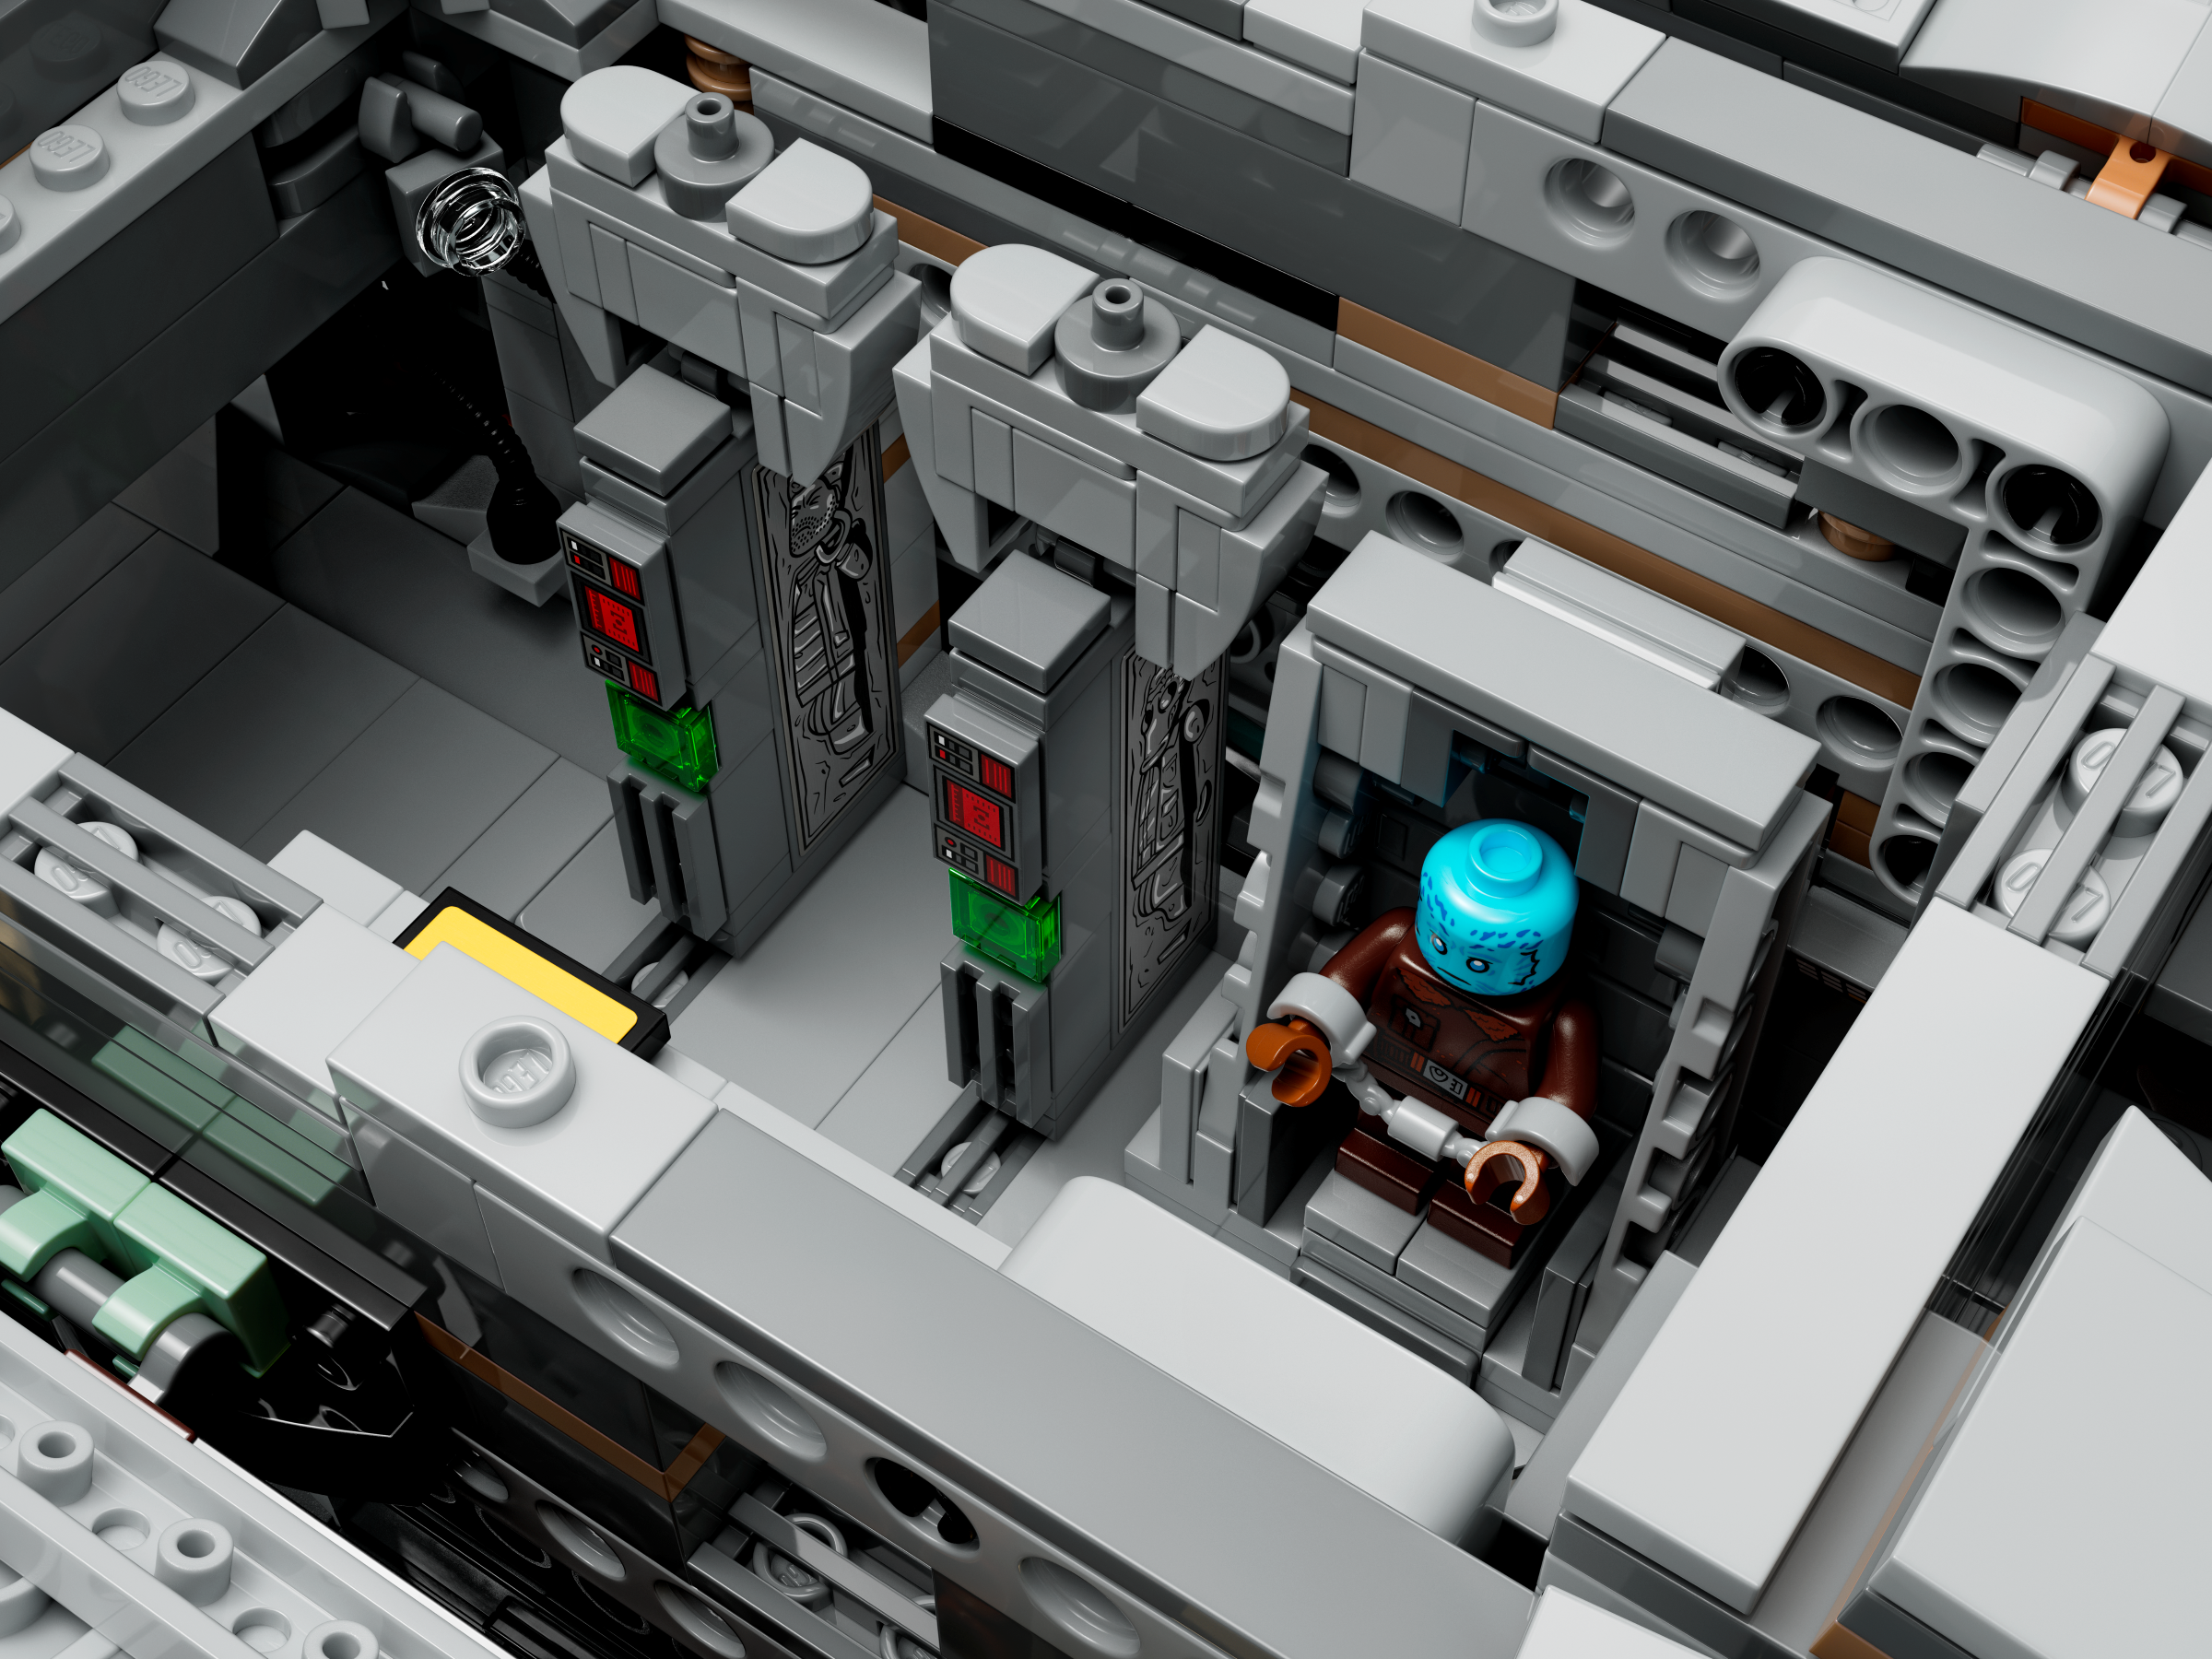 Lego Star Wars Le Razor Crest – Tour de jeux - Divertioz